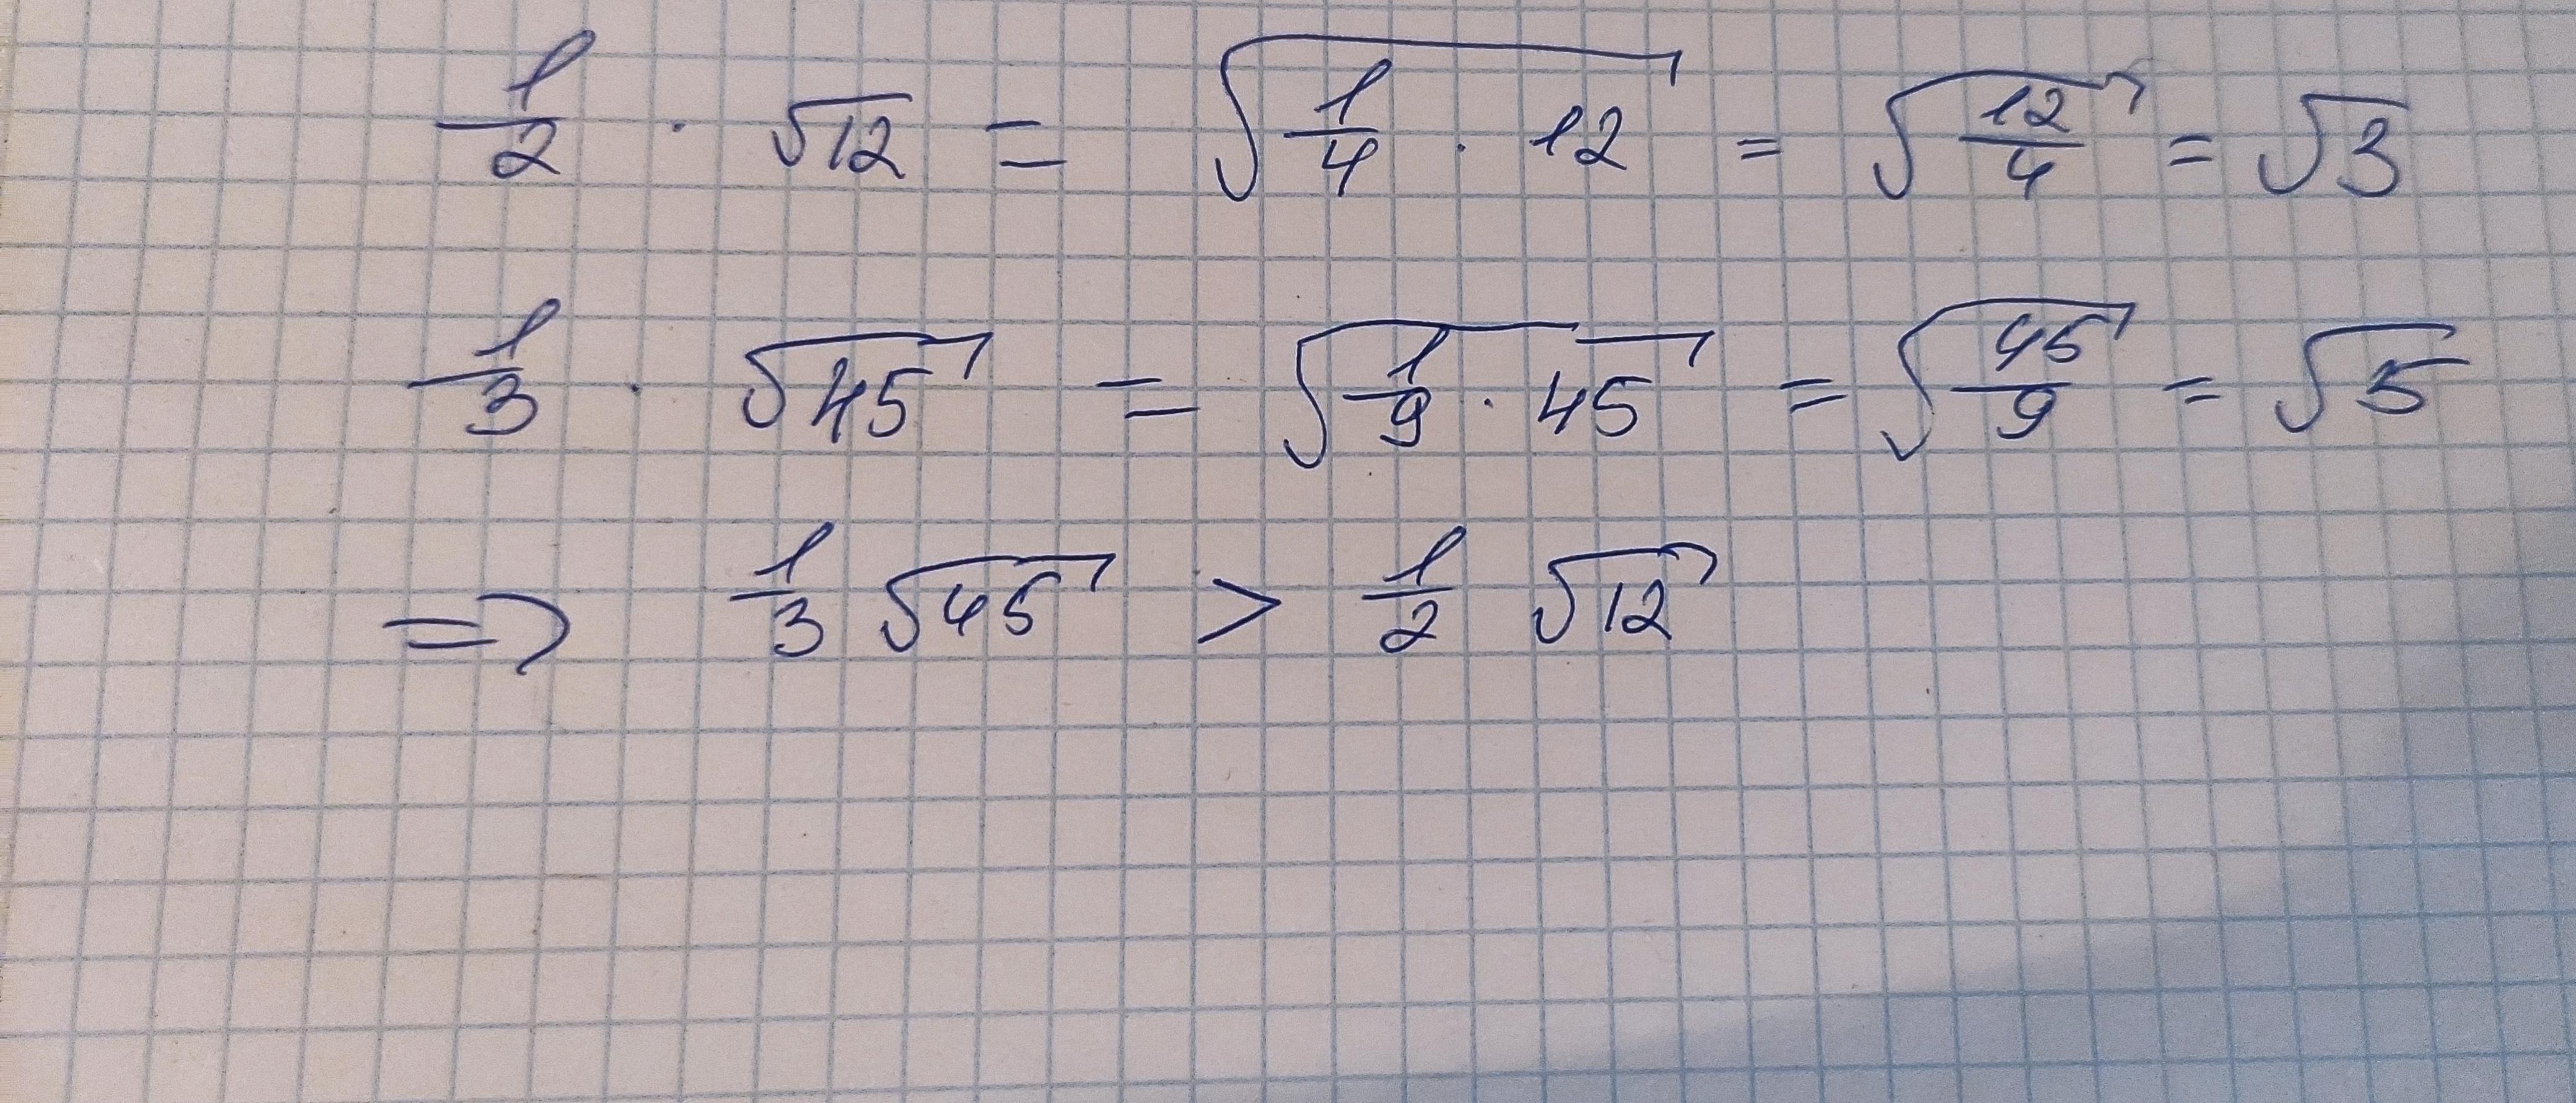 2 3 корень 5 корень 45 2. Корень из 45. Корень 12. (-10+- 2 Корень 11) / 14 решение. 36,45 Корень.